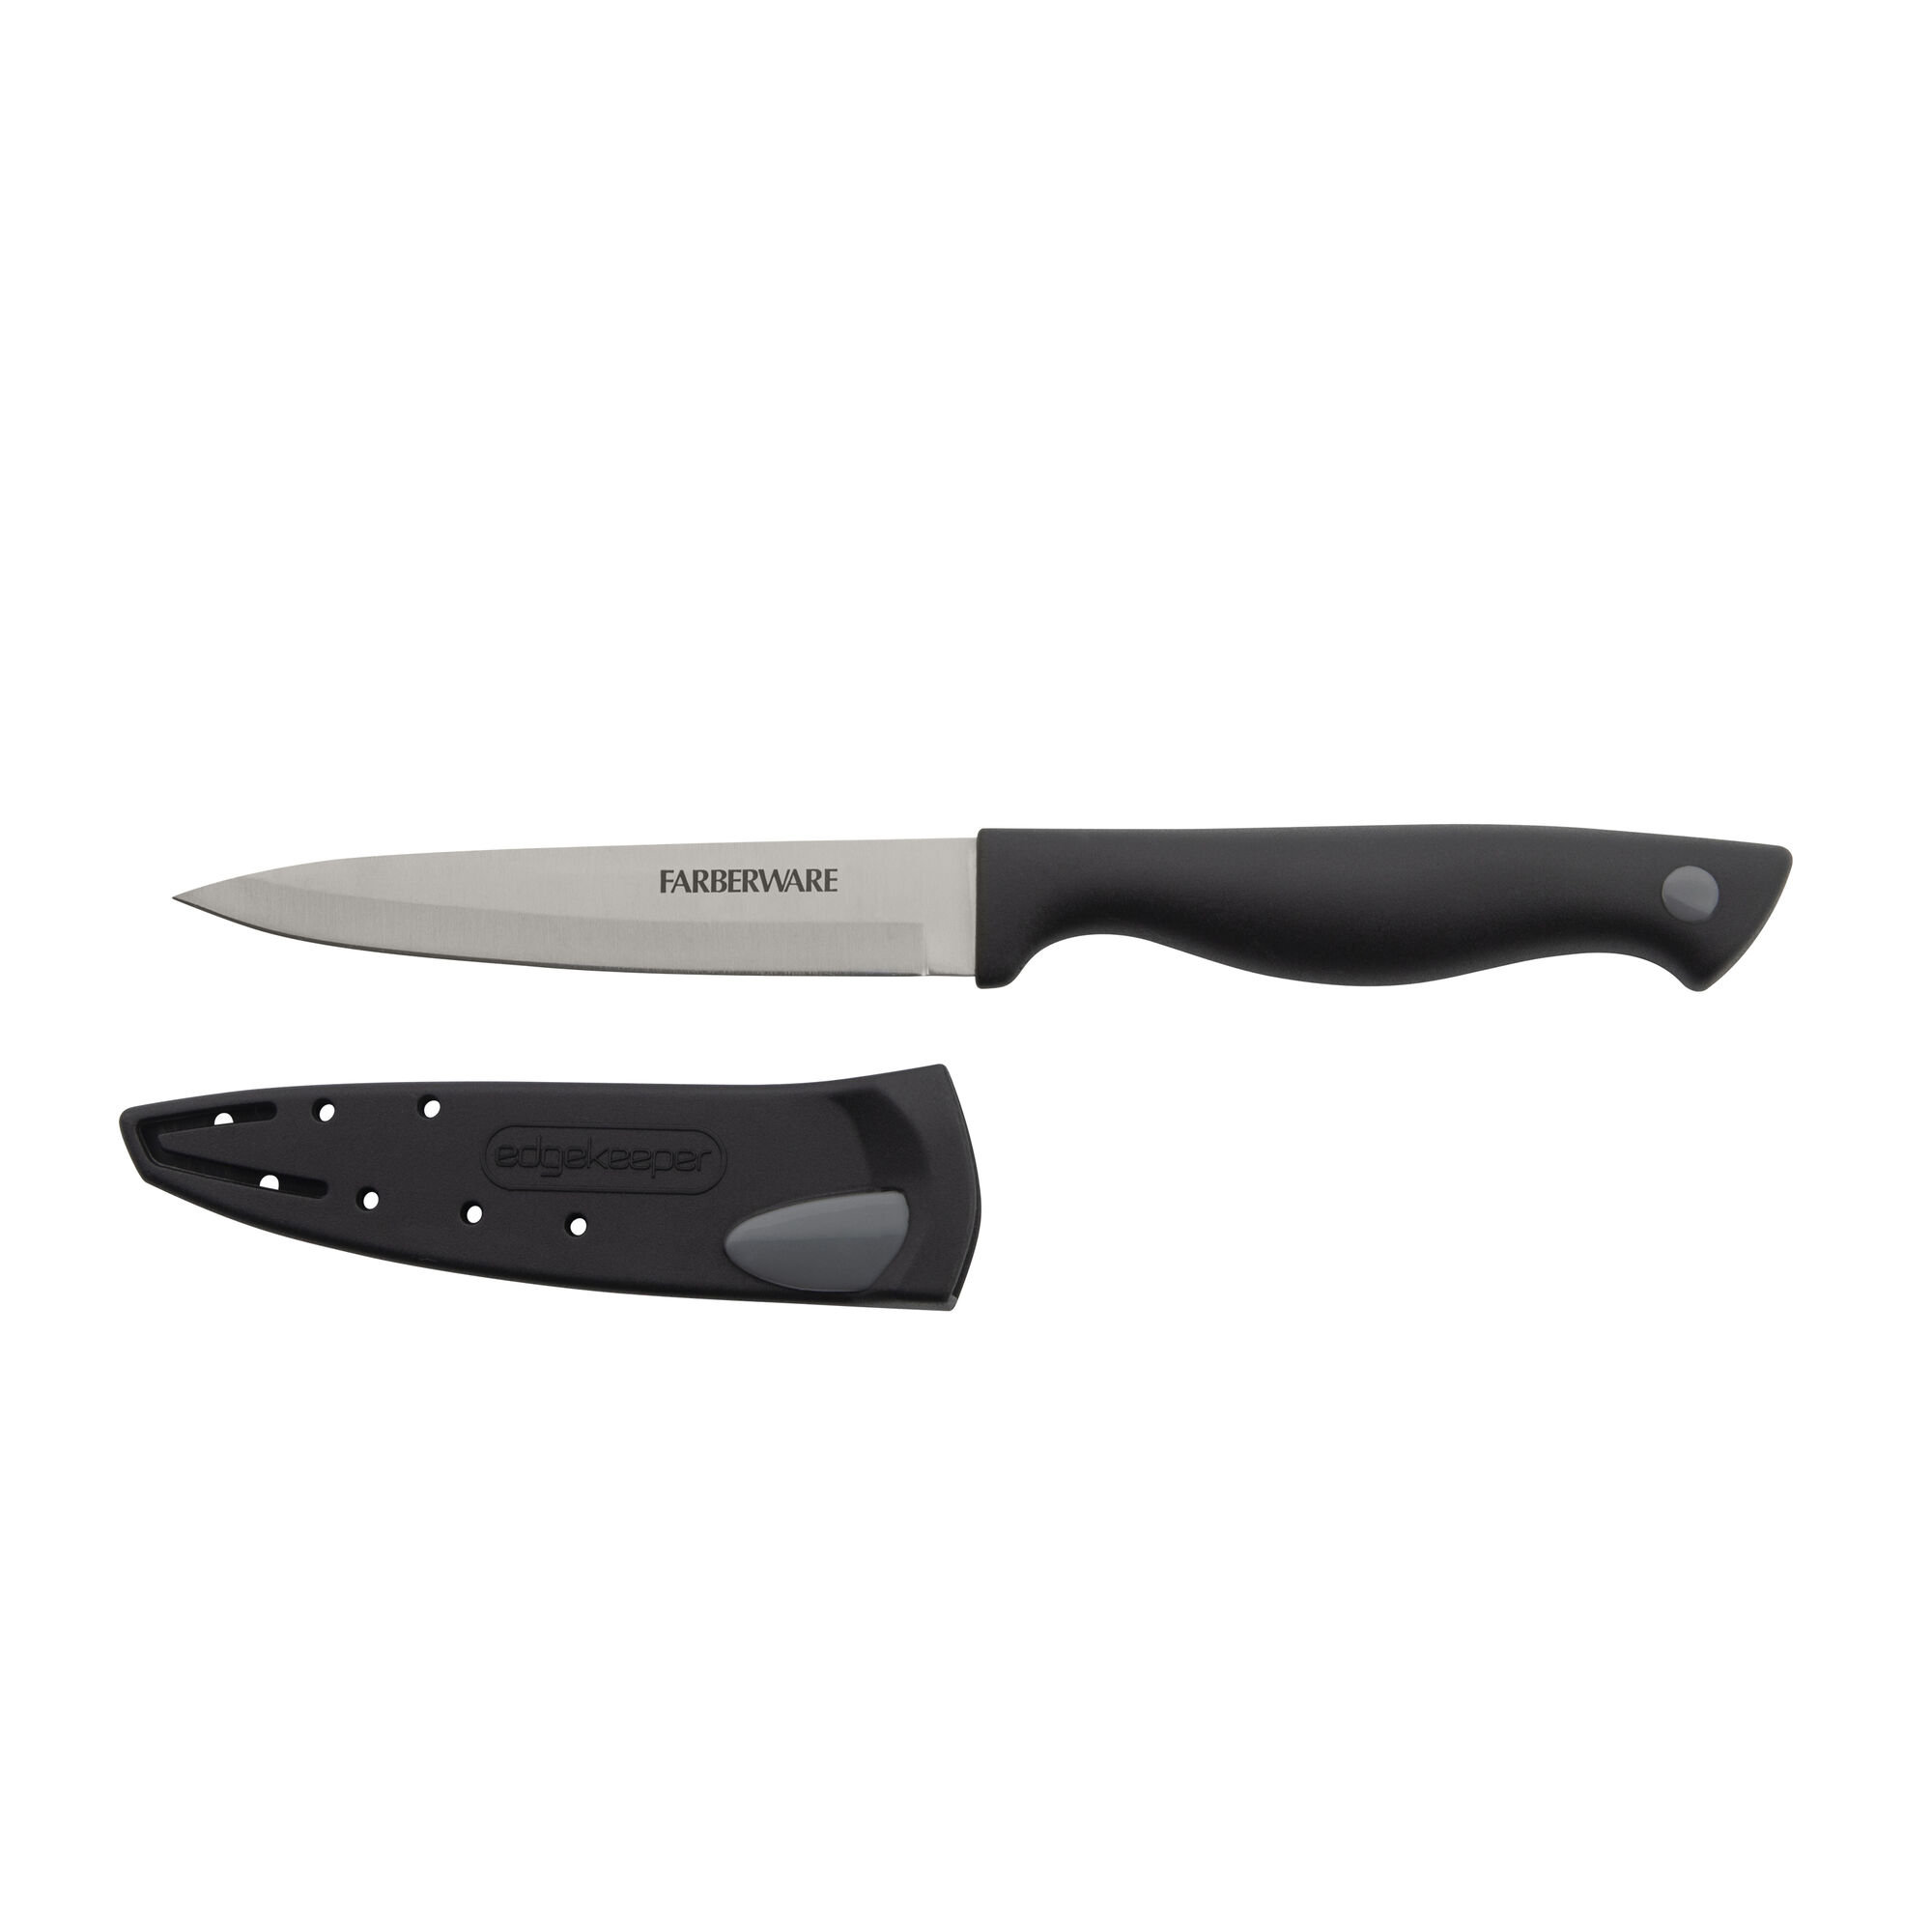 Farberware Edgekeeper Slicing Knife with Sheath 8